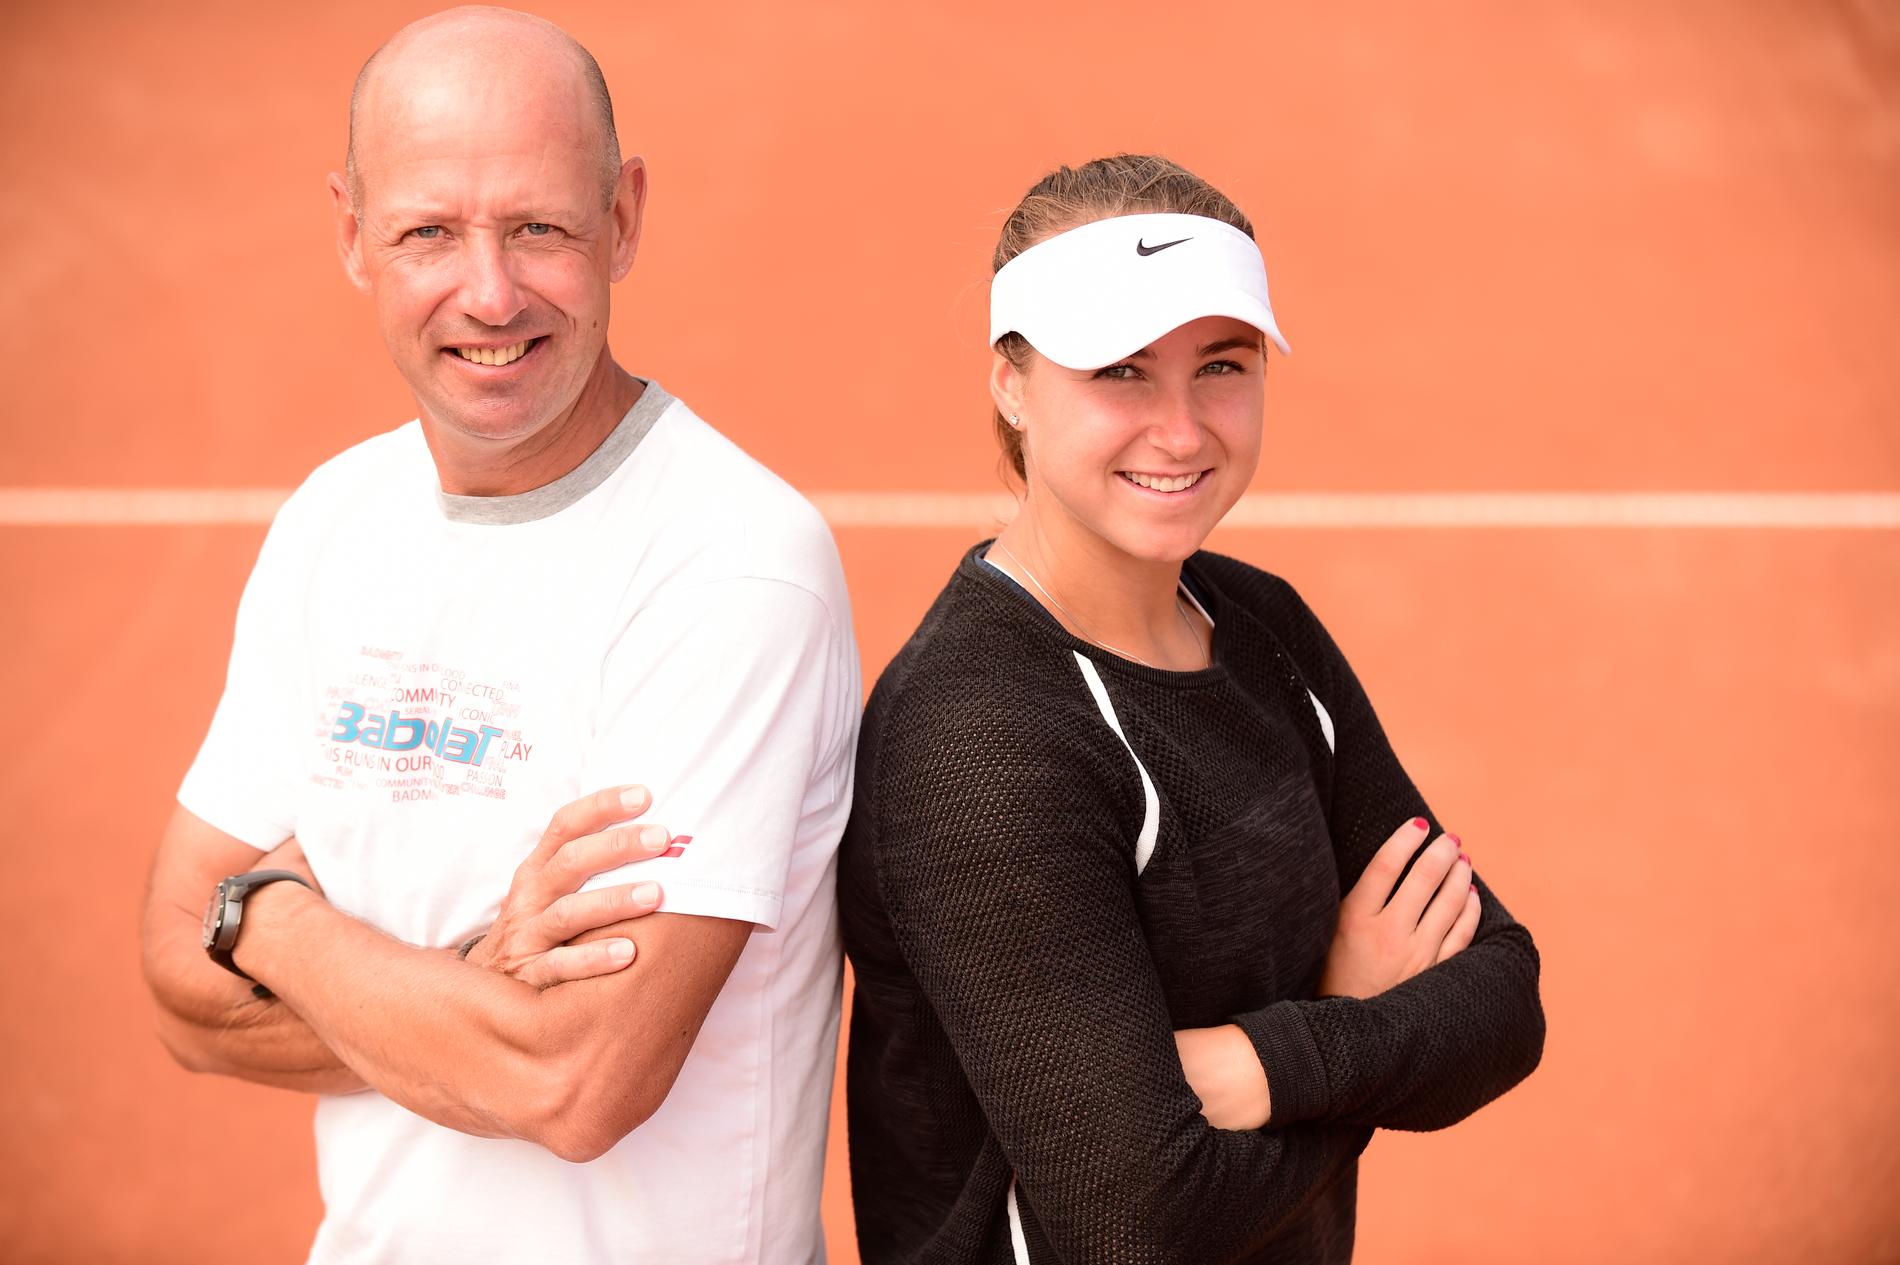 Pappa och tränare. Rebecca Peterson åker världen runt med pappa Mart i jakten på att bli en av världens bästa tennisspelare.